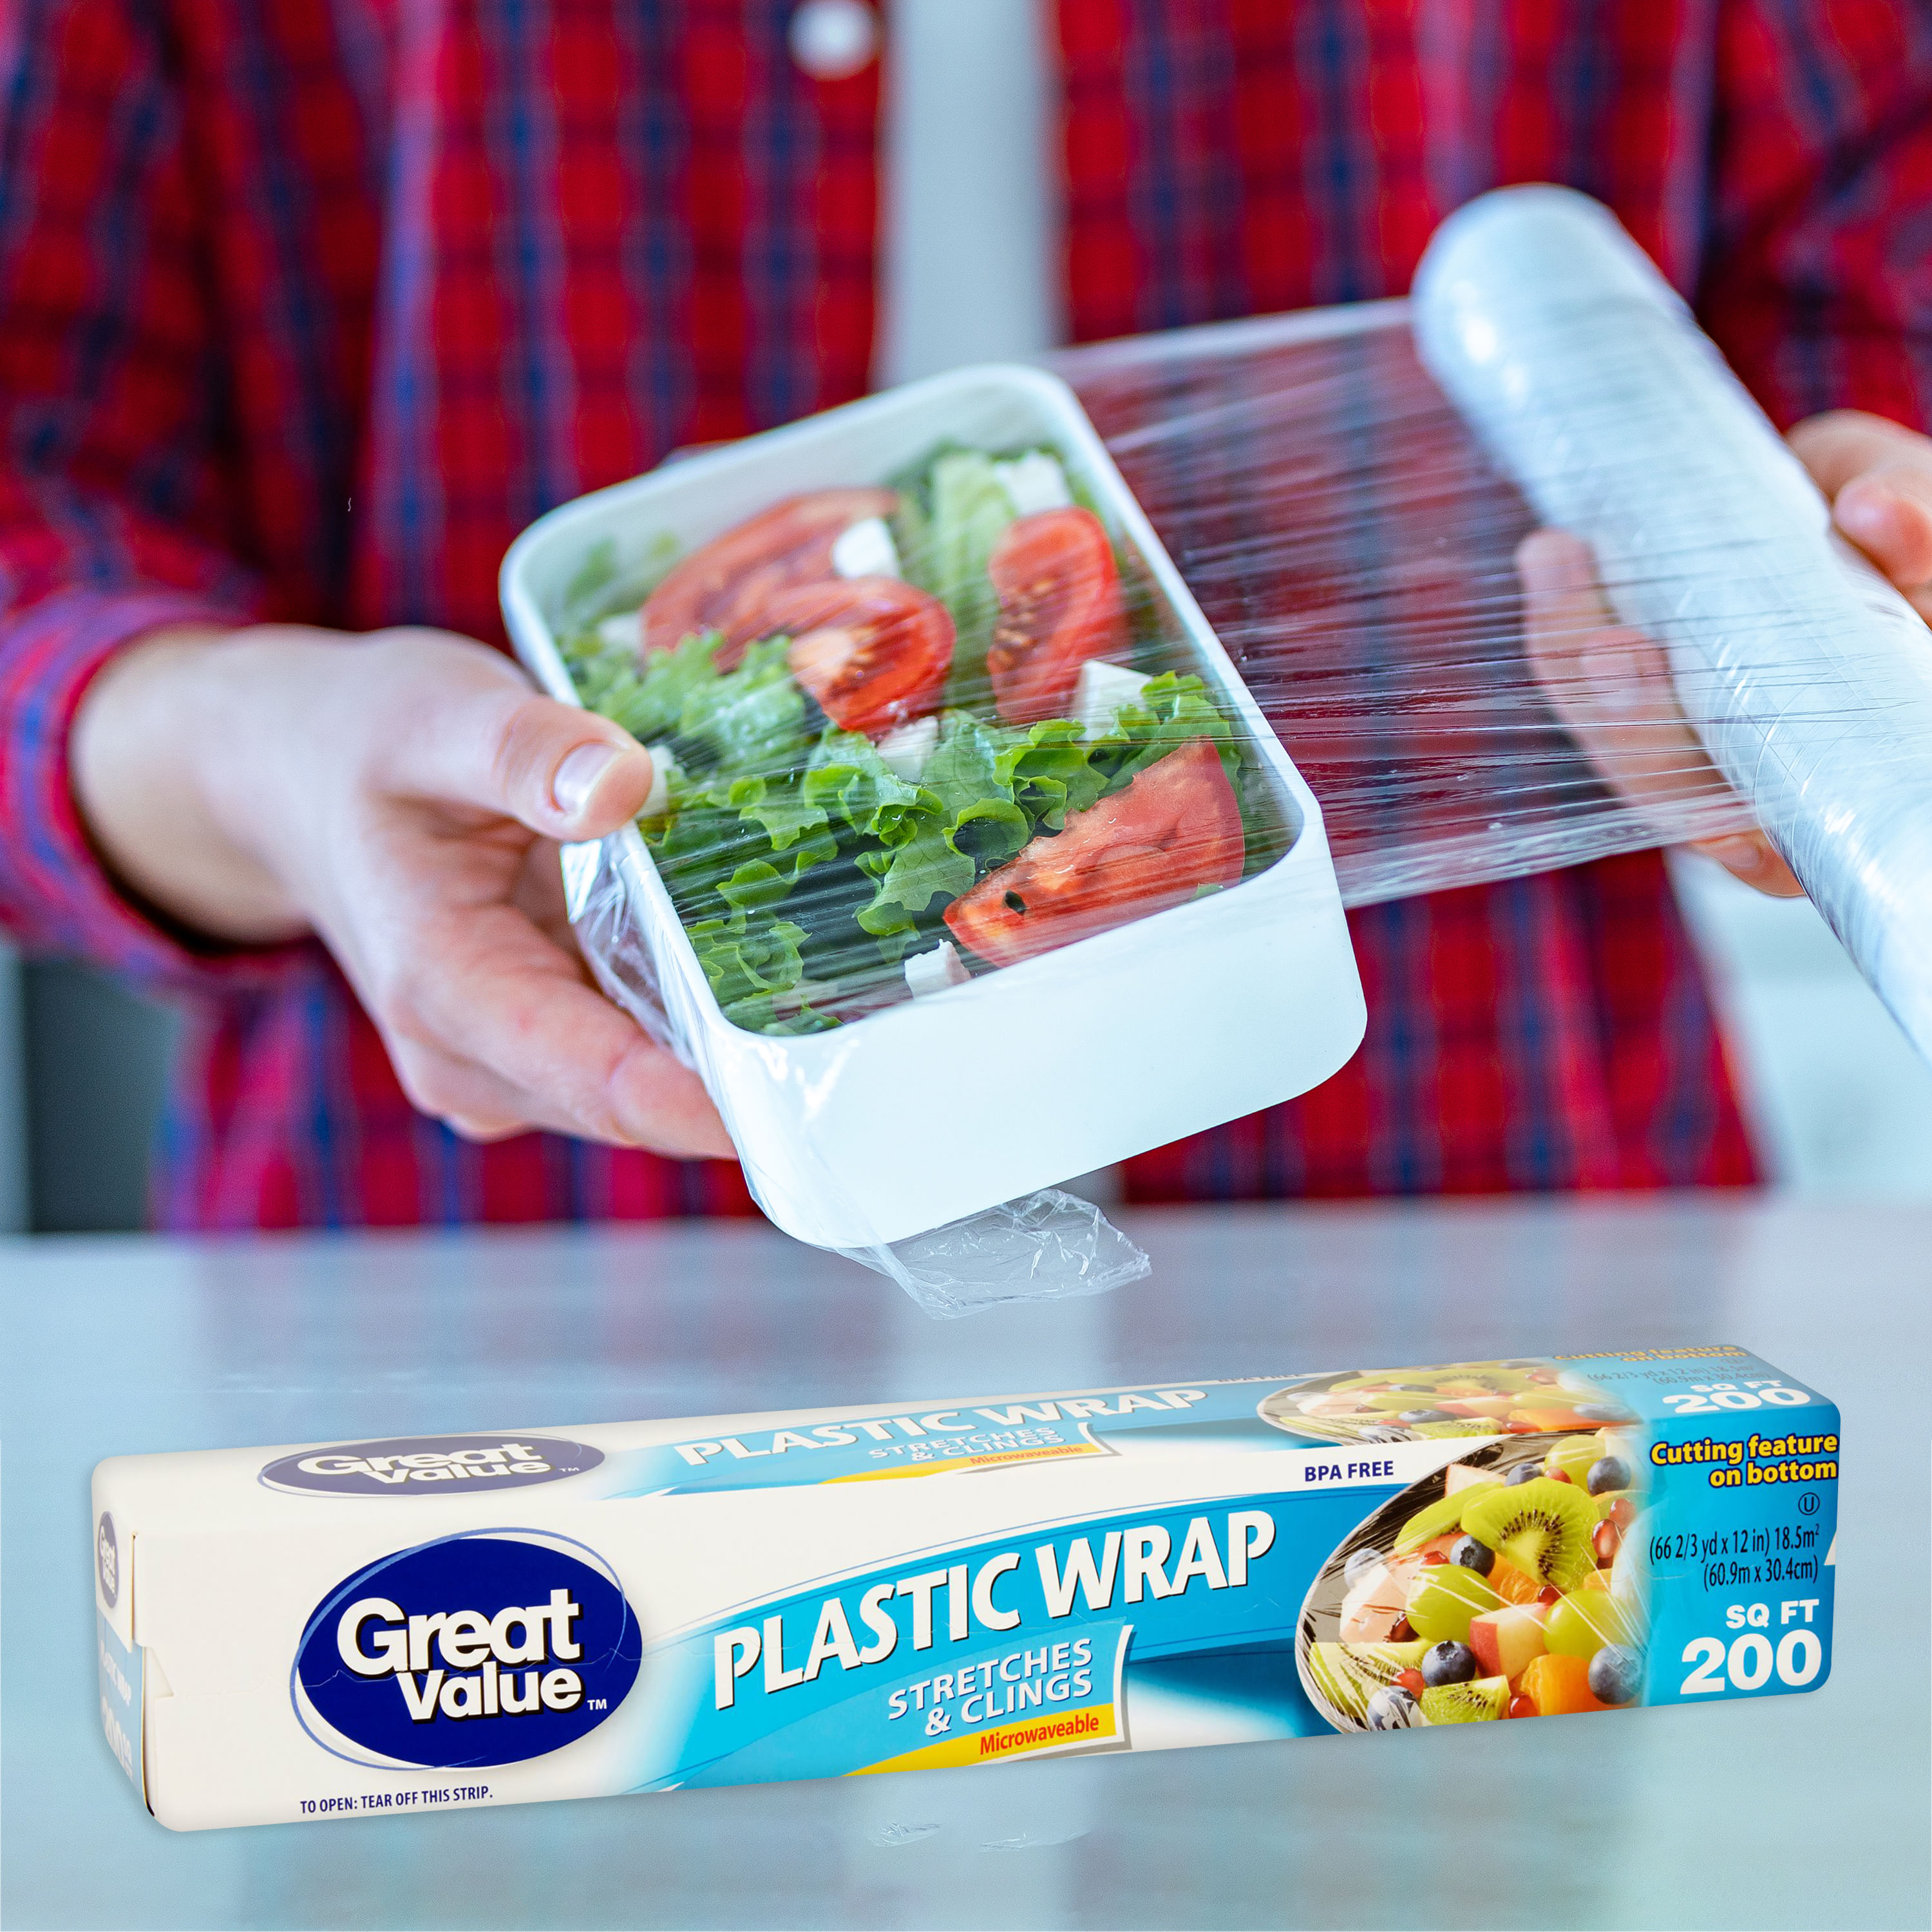 Plastilopez S.A - ✓👌 Rollo de plástico film transparente calidad  industrial para embalar y envasar productos alimenticios, carnes, pescados,  quesos y similares✓ Encuentra los mejores precios para tu negocio! 😃📣 . .  #